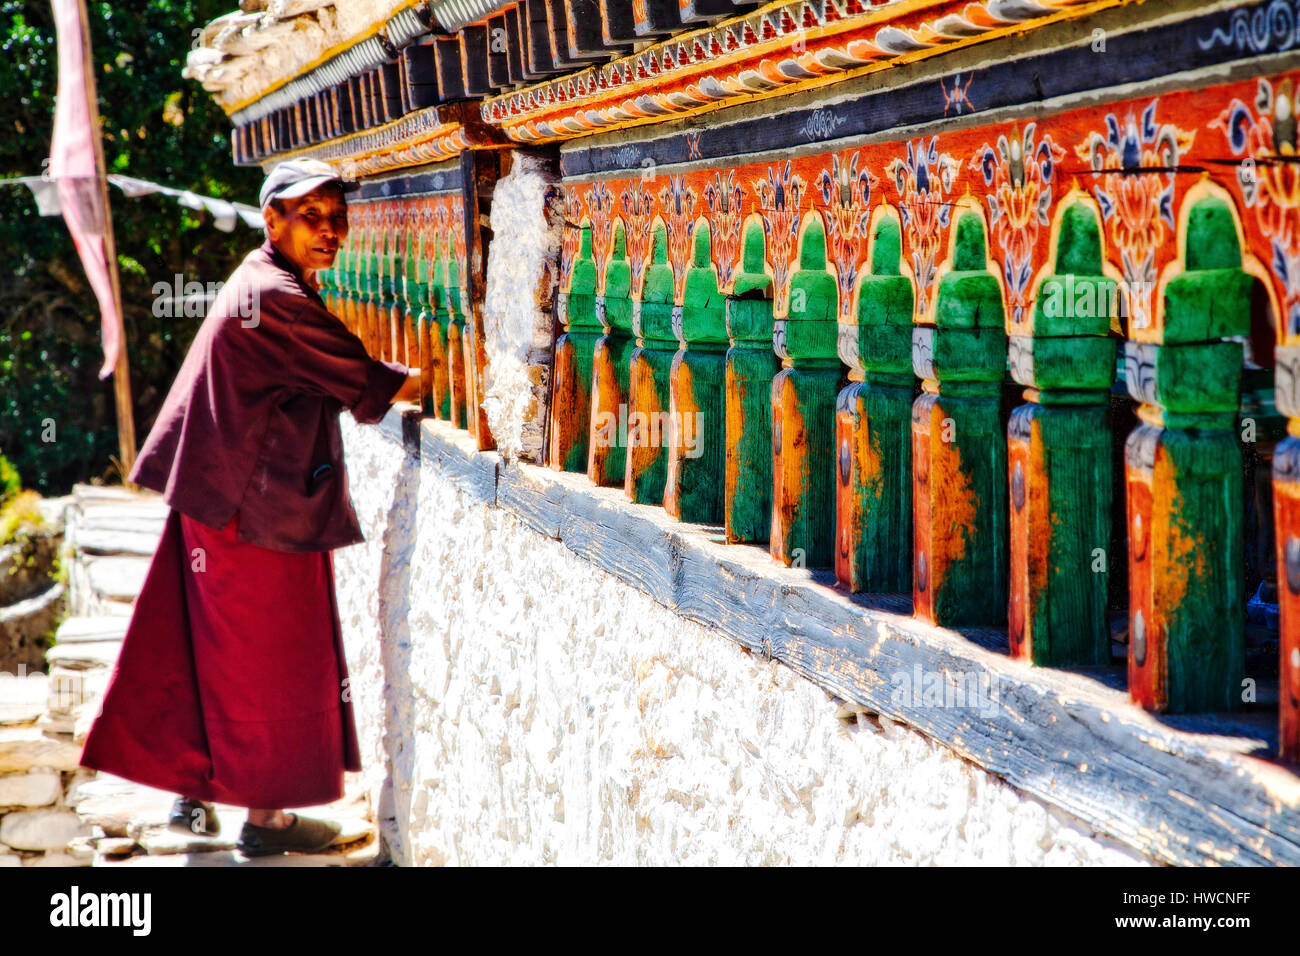 Une femme travaille les roues de prière à l'Rimochen Tang Le Monastère Lhakhang, Bhoutan Banque D'Images